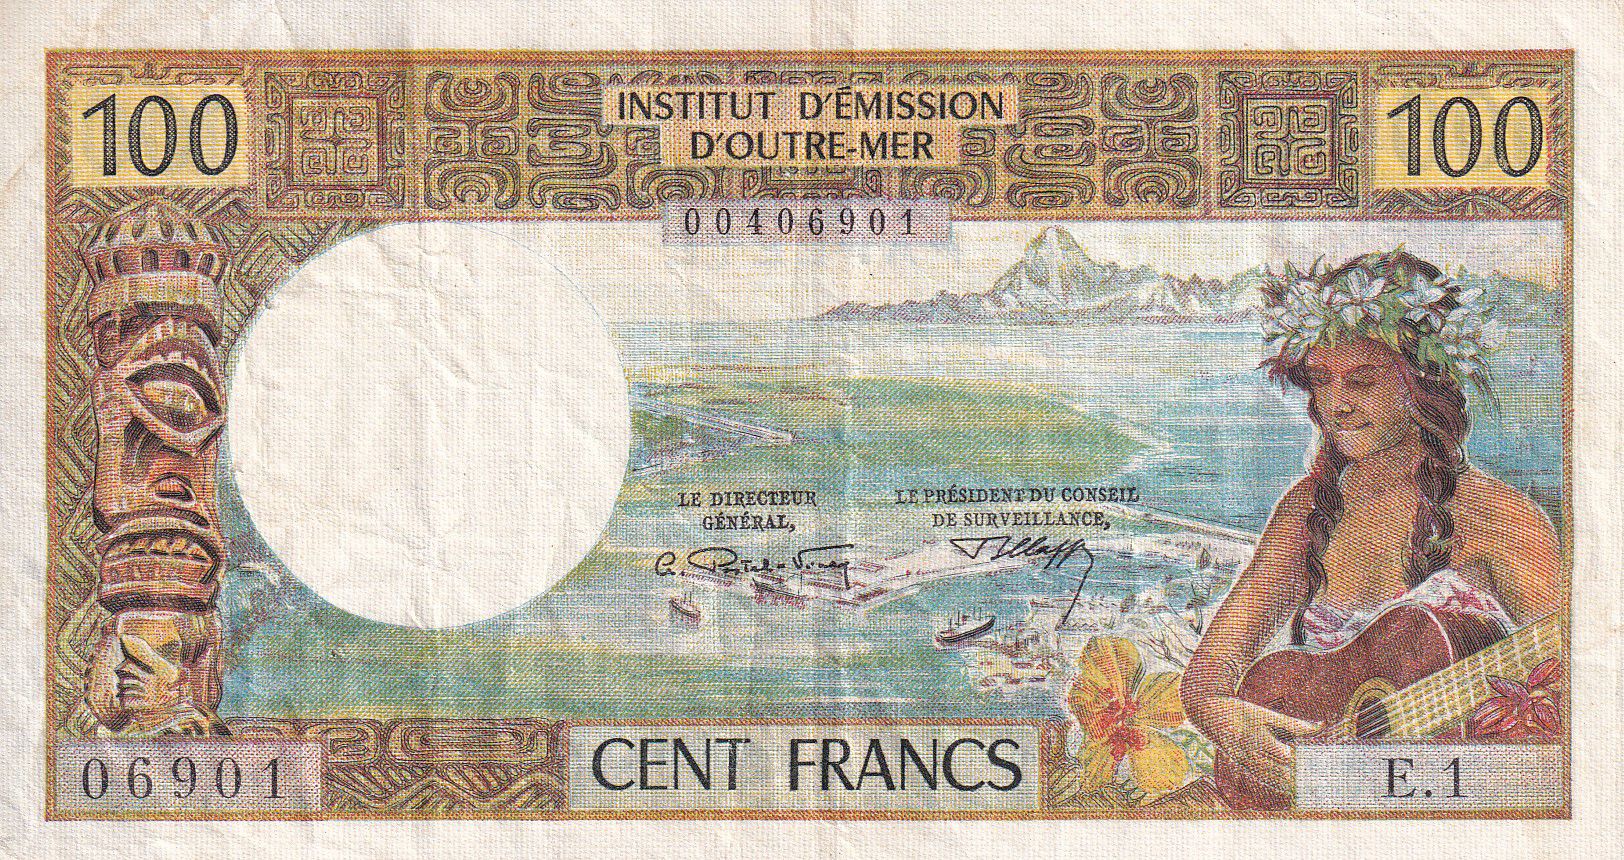 Banknote Tahiti 100 Francs - Young girl - 1971 - Serial E.1 - P.24a